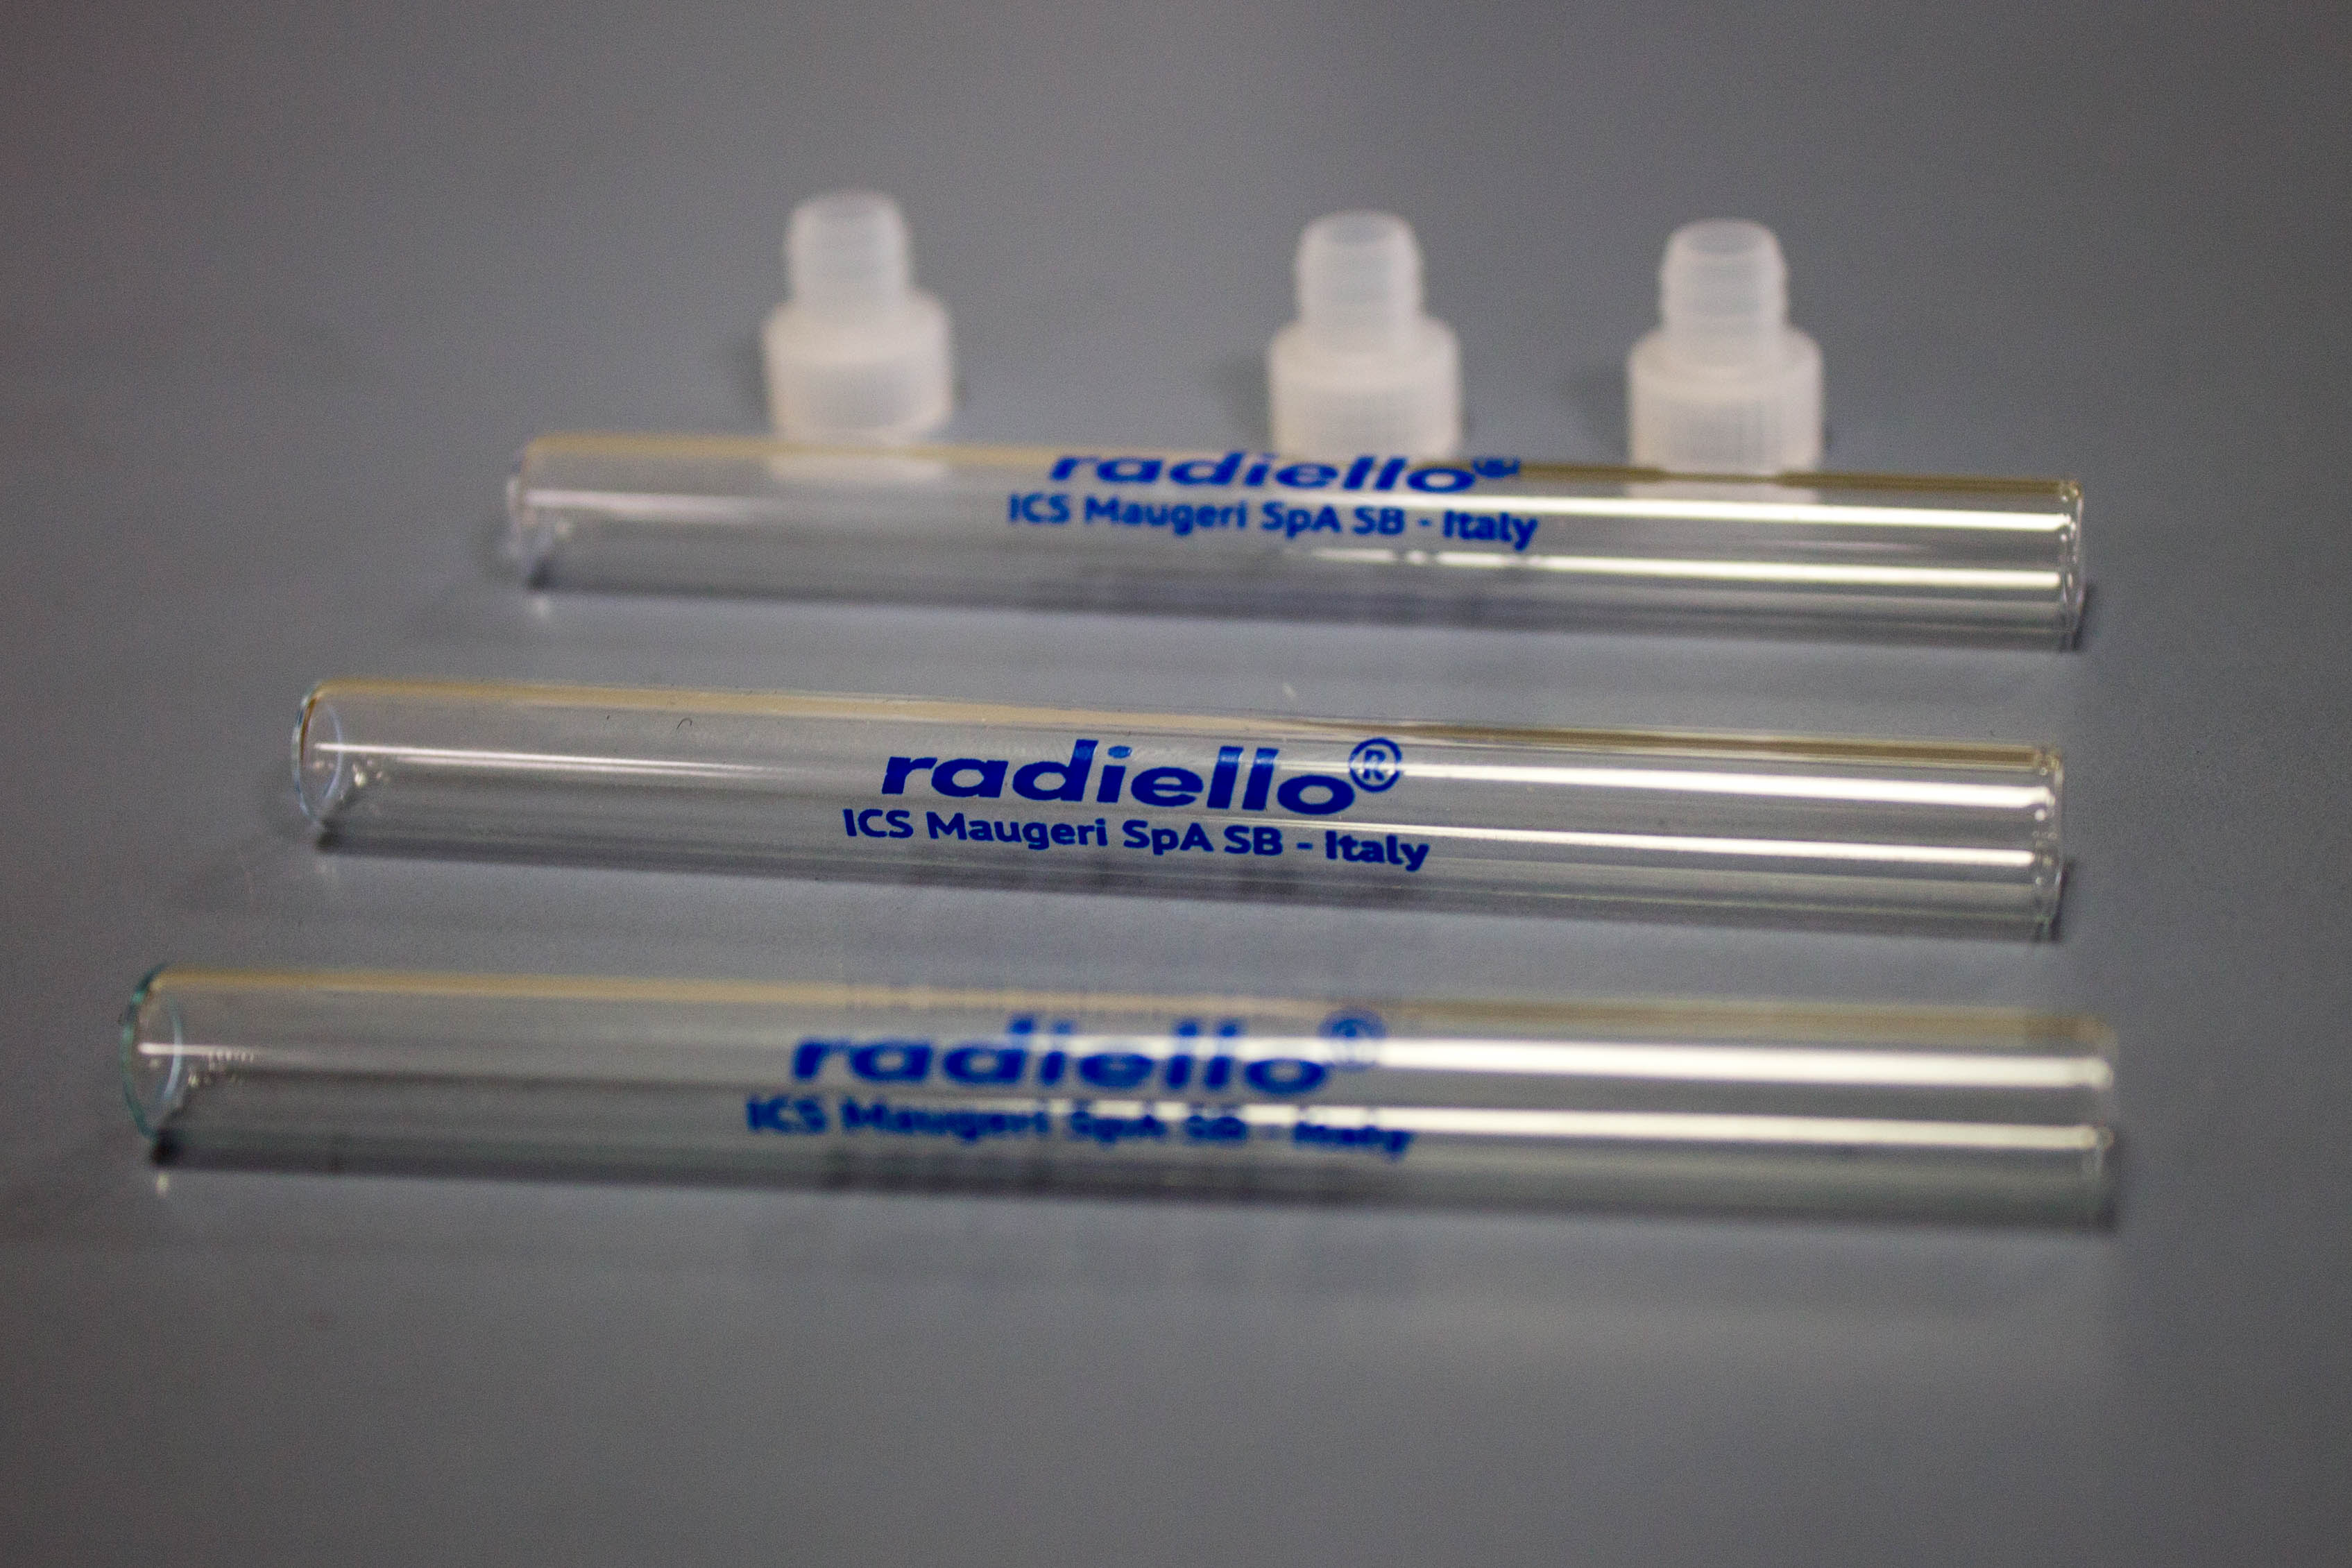 Radiello Empty storage tubes Image